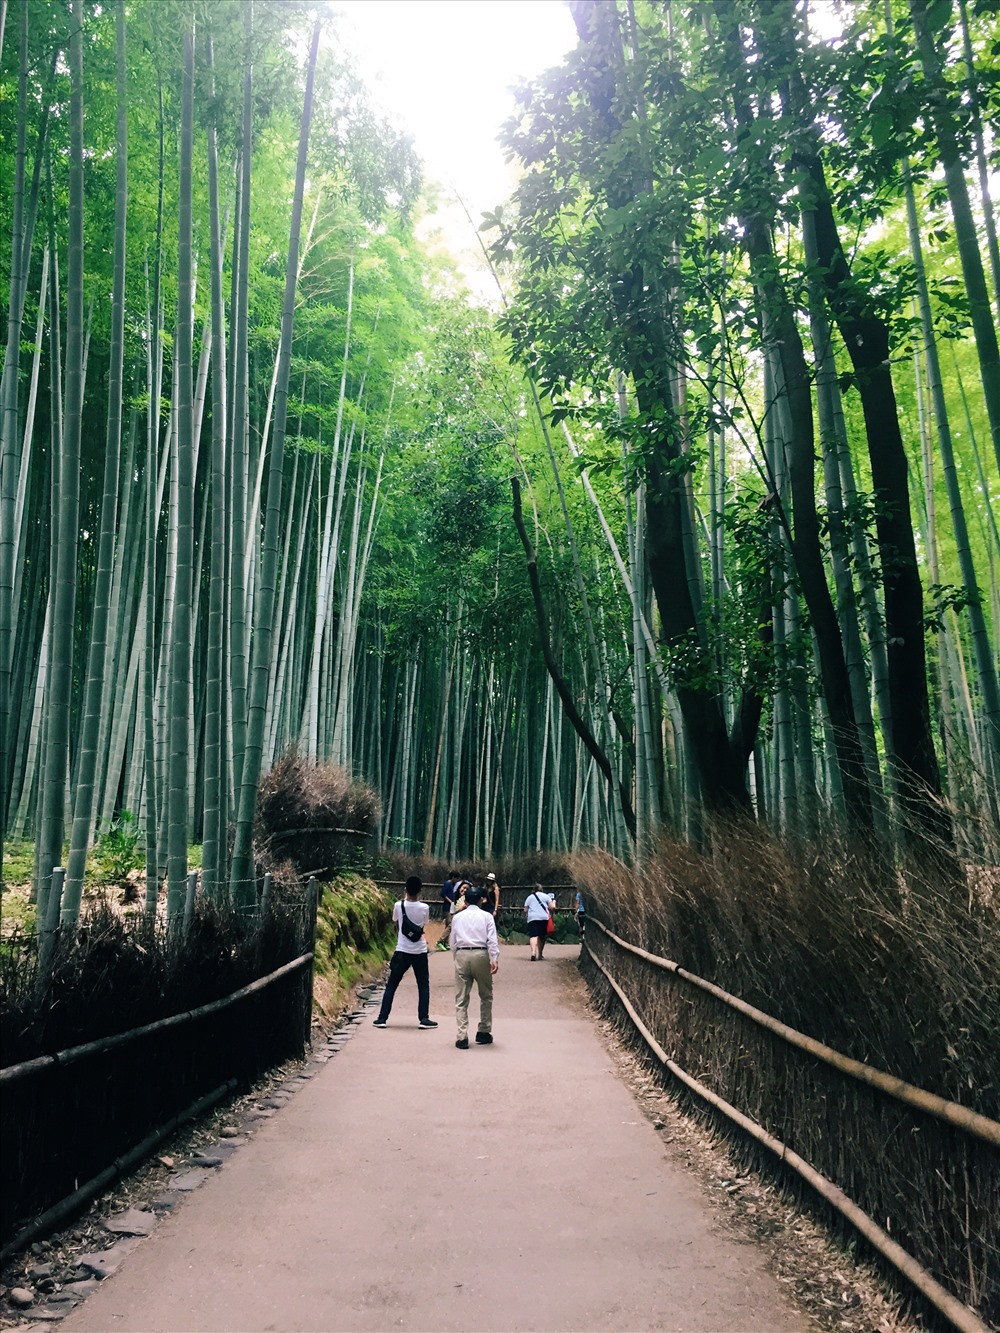 Có thể nói mùa hè chính là mùa đẹp nhất của Rừng trúc Sagano, khi mà những tán cây xanh mướt hòa với luồng không khí mát mẻ sẽ mang đến cho du khách sự thoải mái và những bức ảnh tuyệt đẹp. Ảnh: Linh Gooner